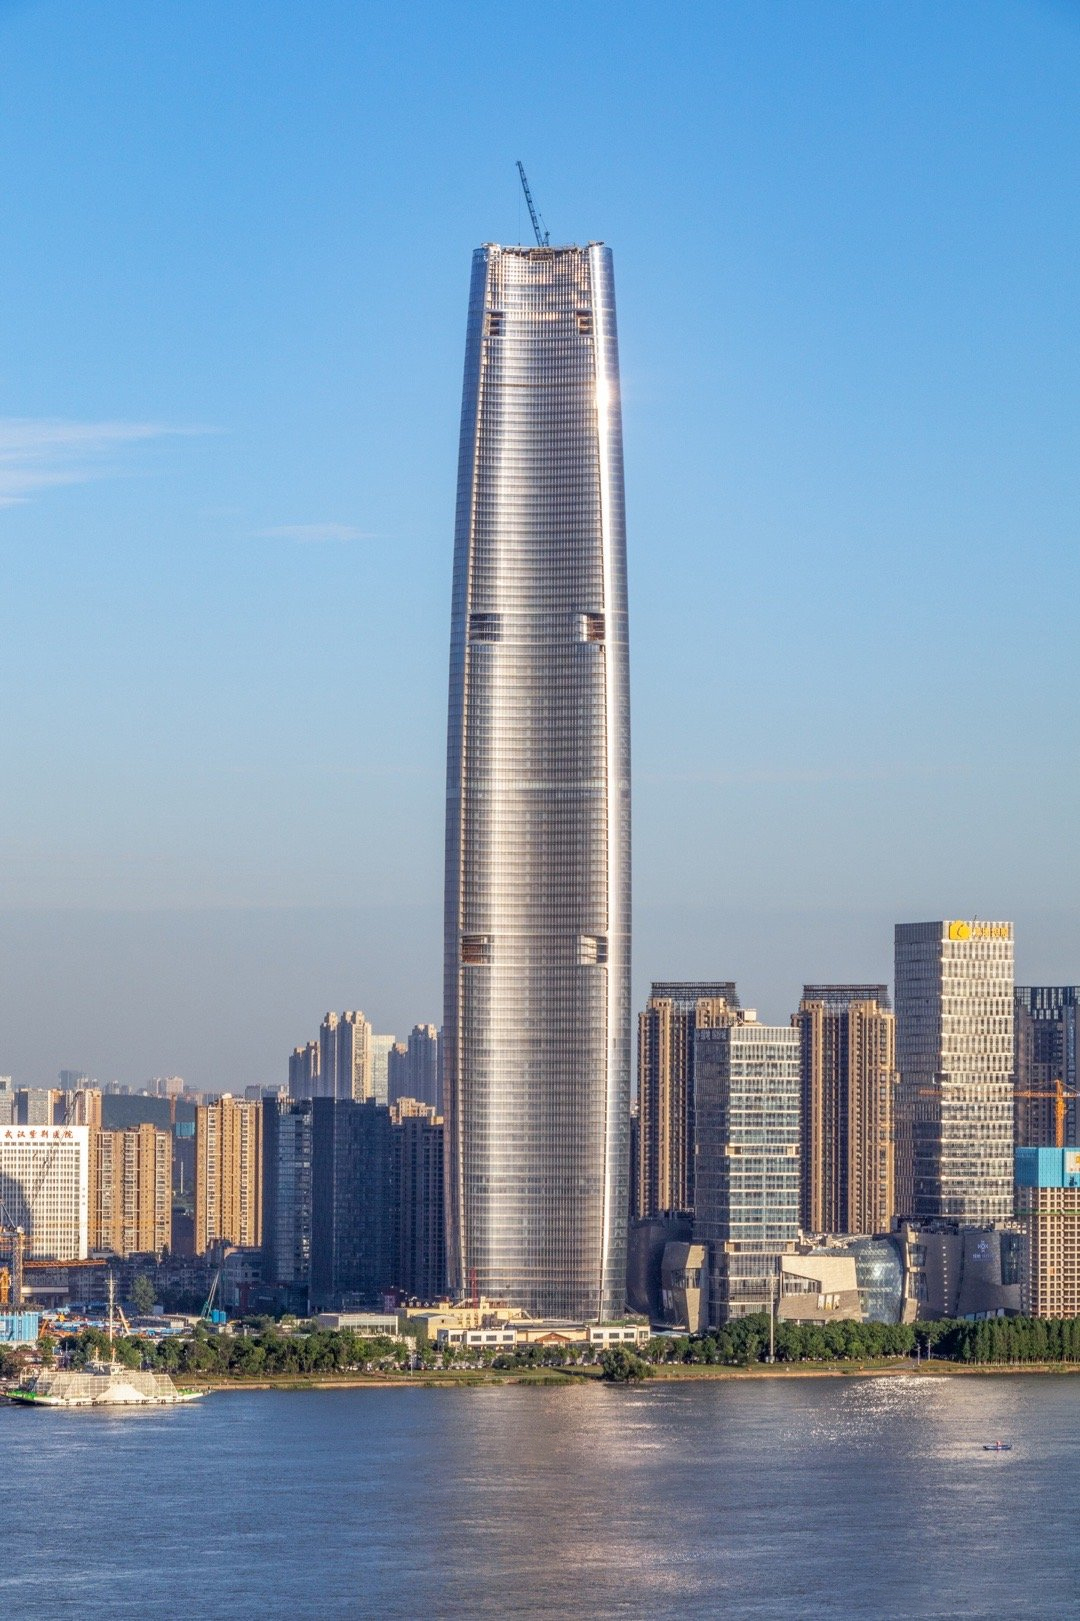 原创从"中华第一高楼"降至"华中第一高楼",武汉绿地中心即将建成